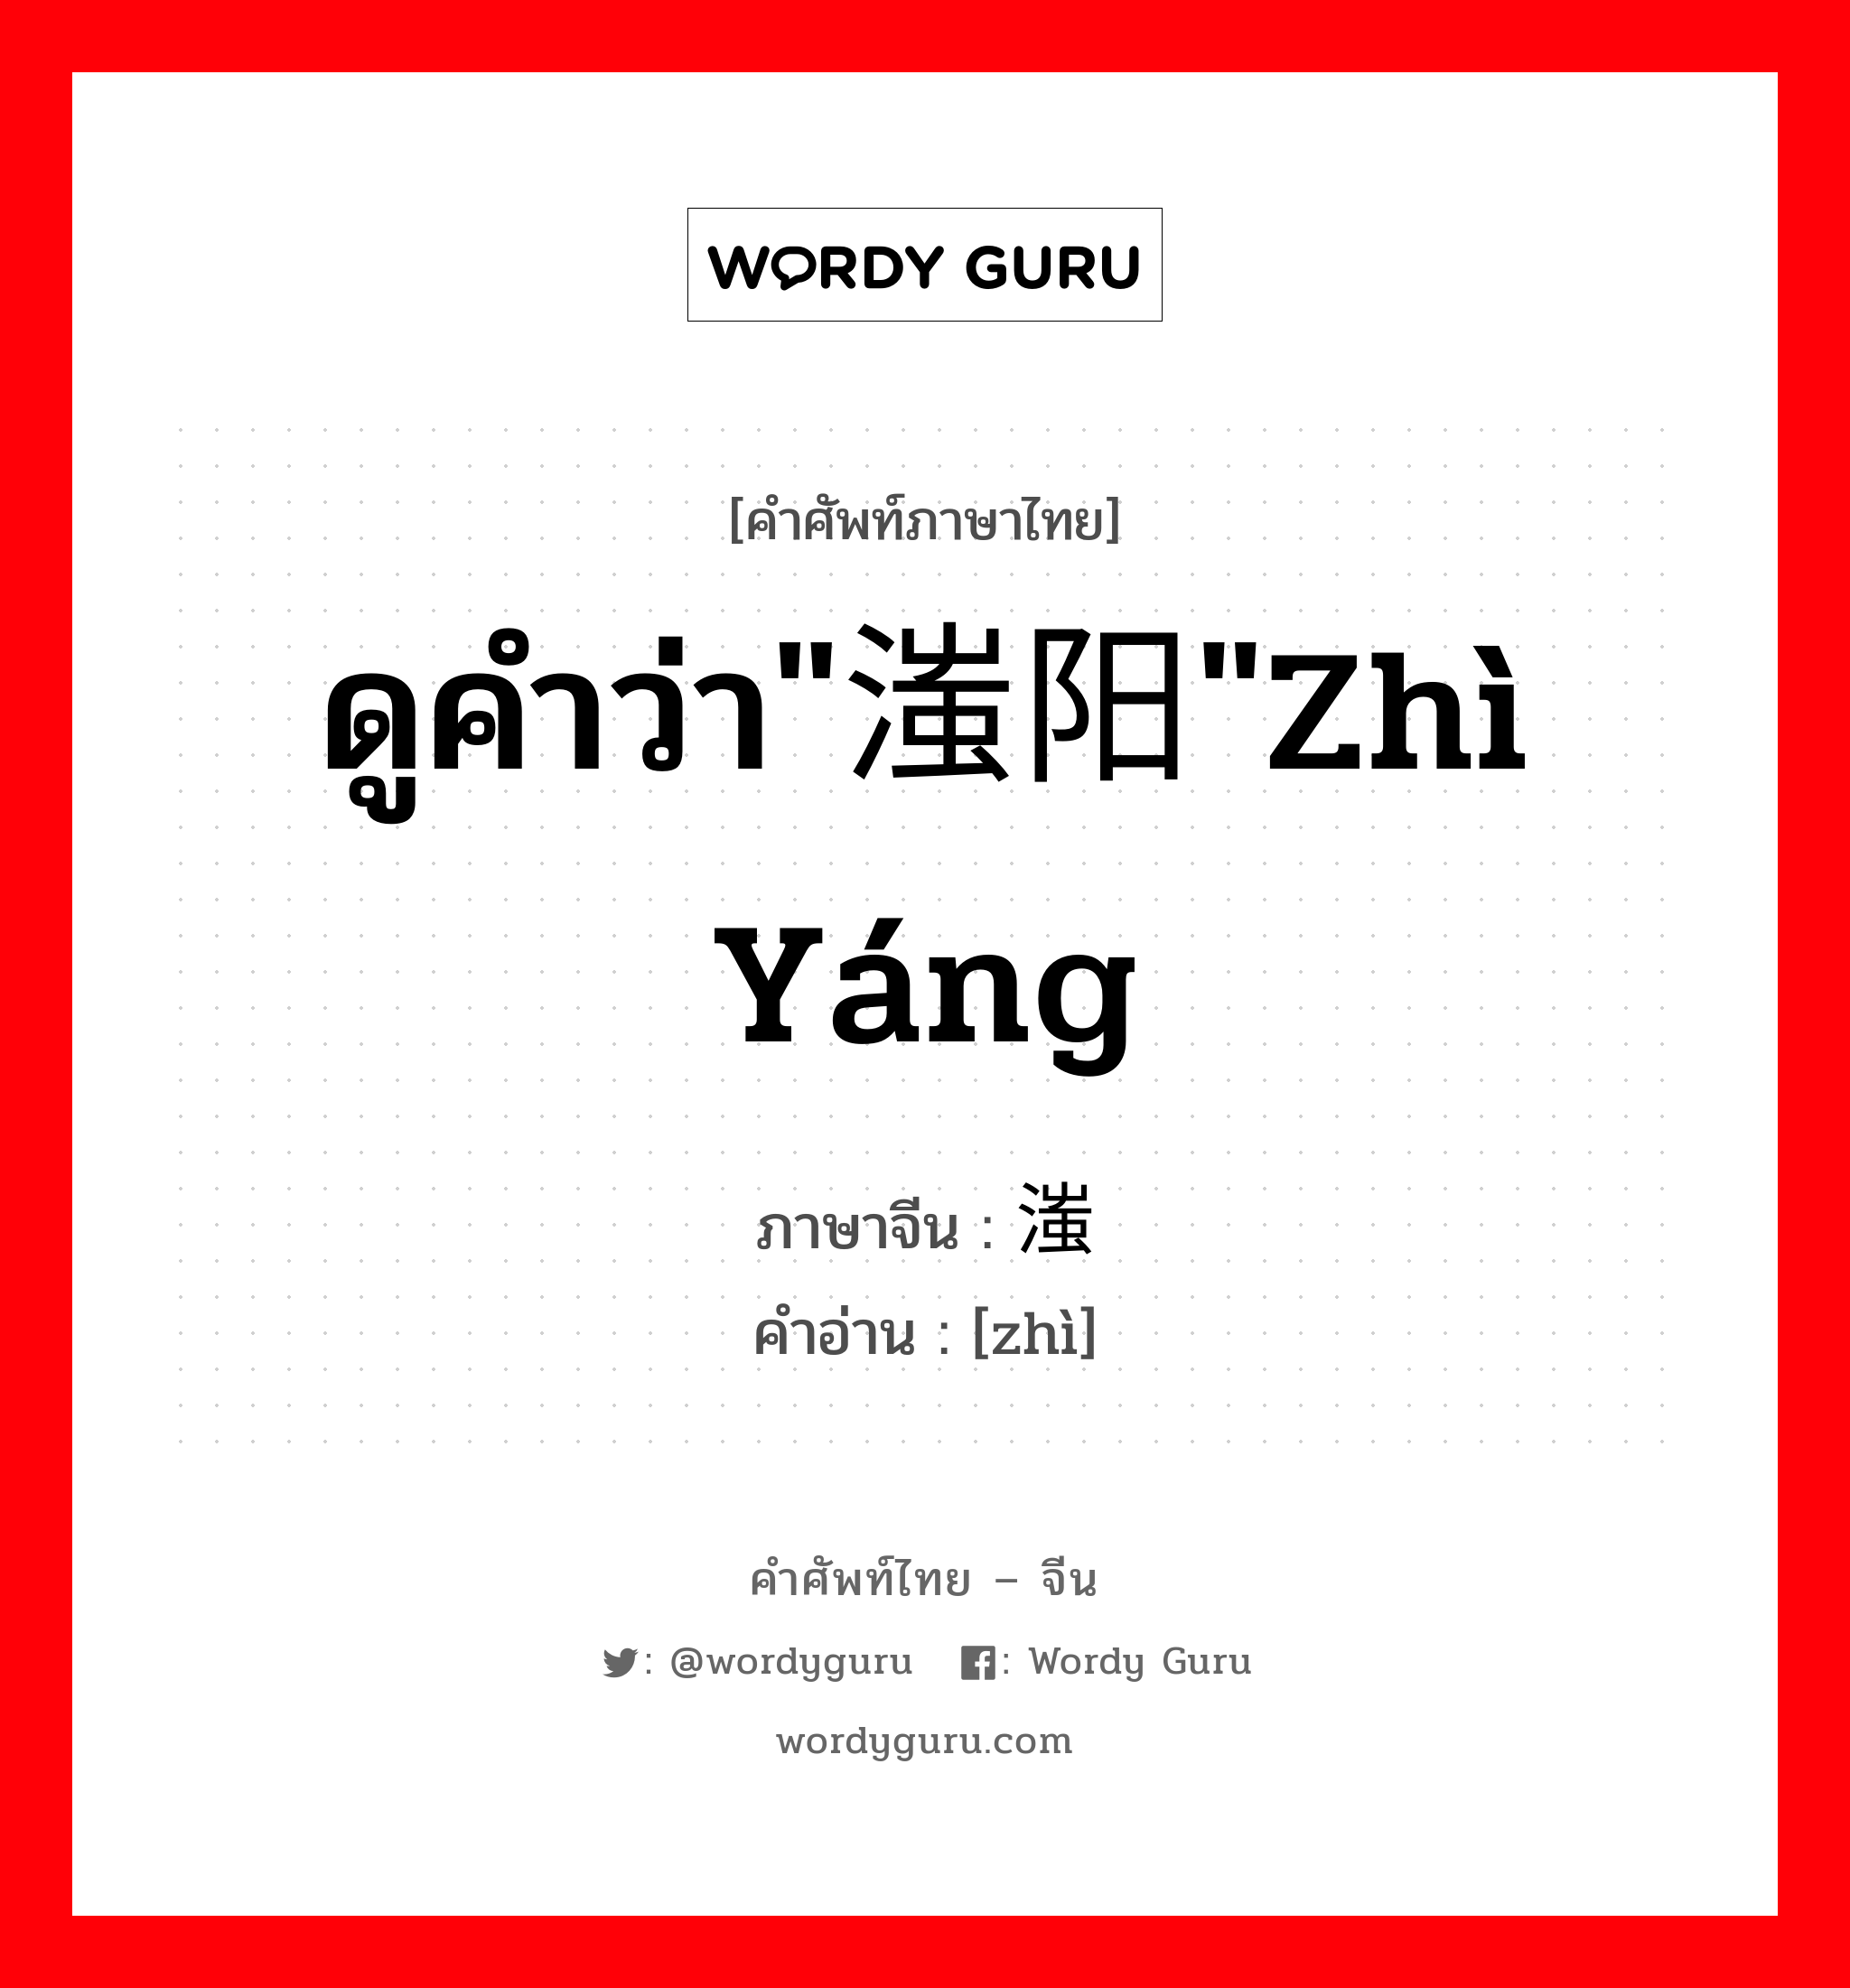 ดูคำว่า"滍阳"zhì yáng ภาษาจีนคืออะไร, คำศัพท์ภาษาไทย - จีน ดูคำว่า"滍阳"zhì yáng ภาษาจีน 滍 คำอ่าน [zhì]